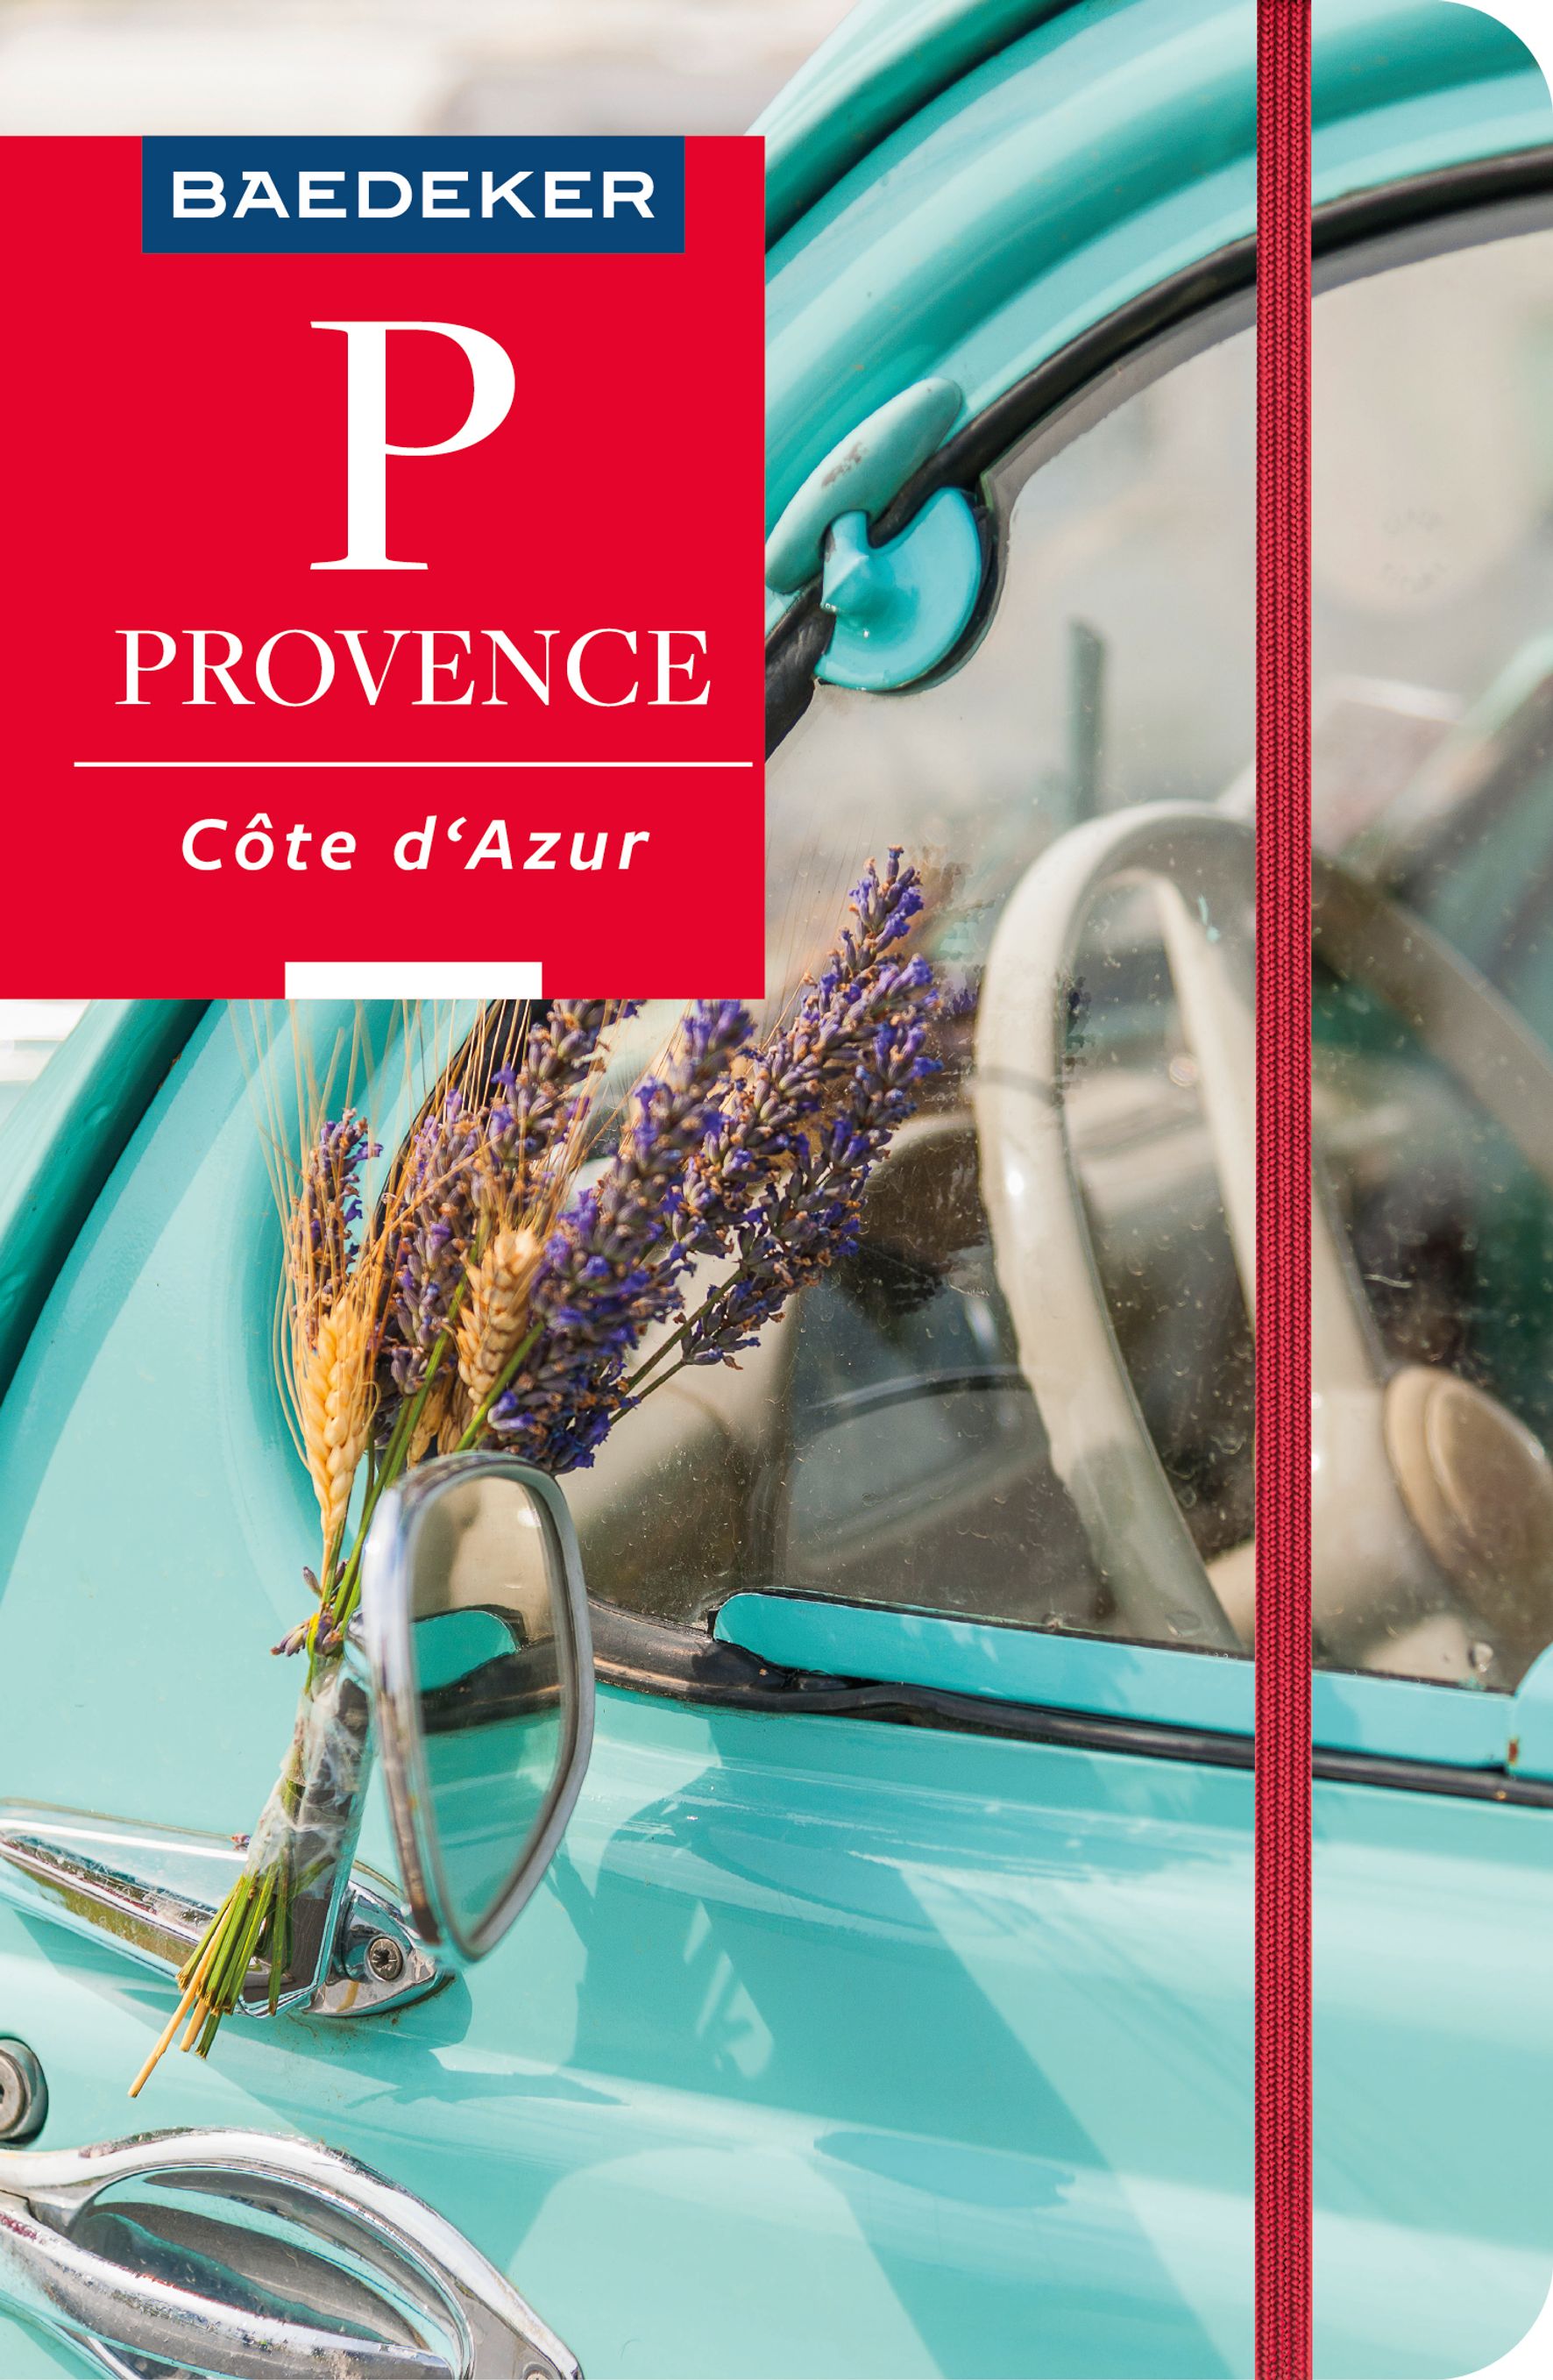 Baedeker Provence, Côte d'Azur